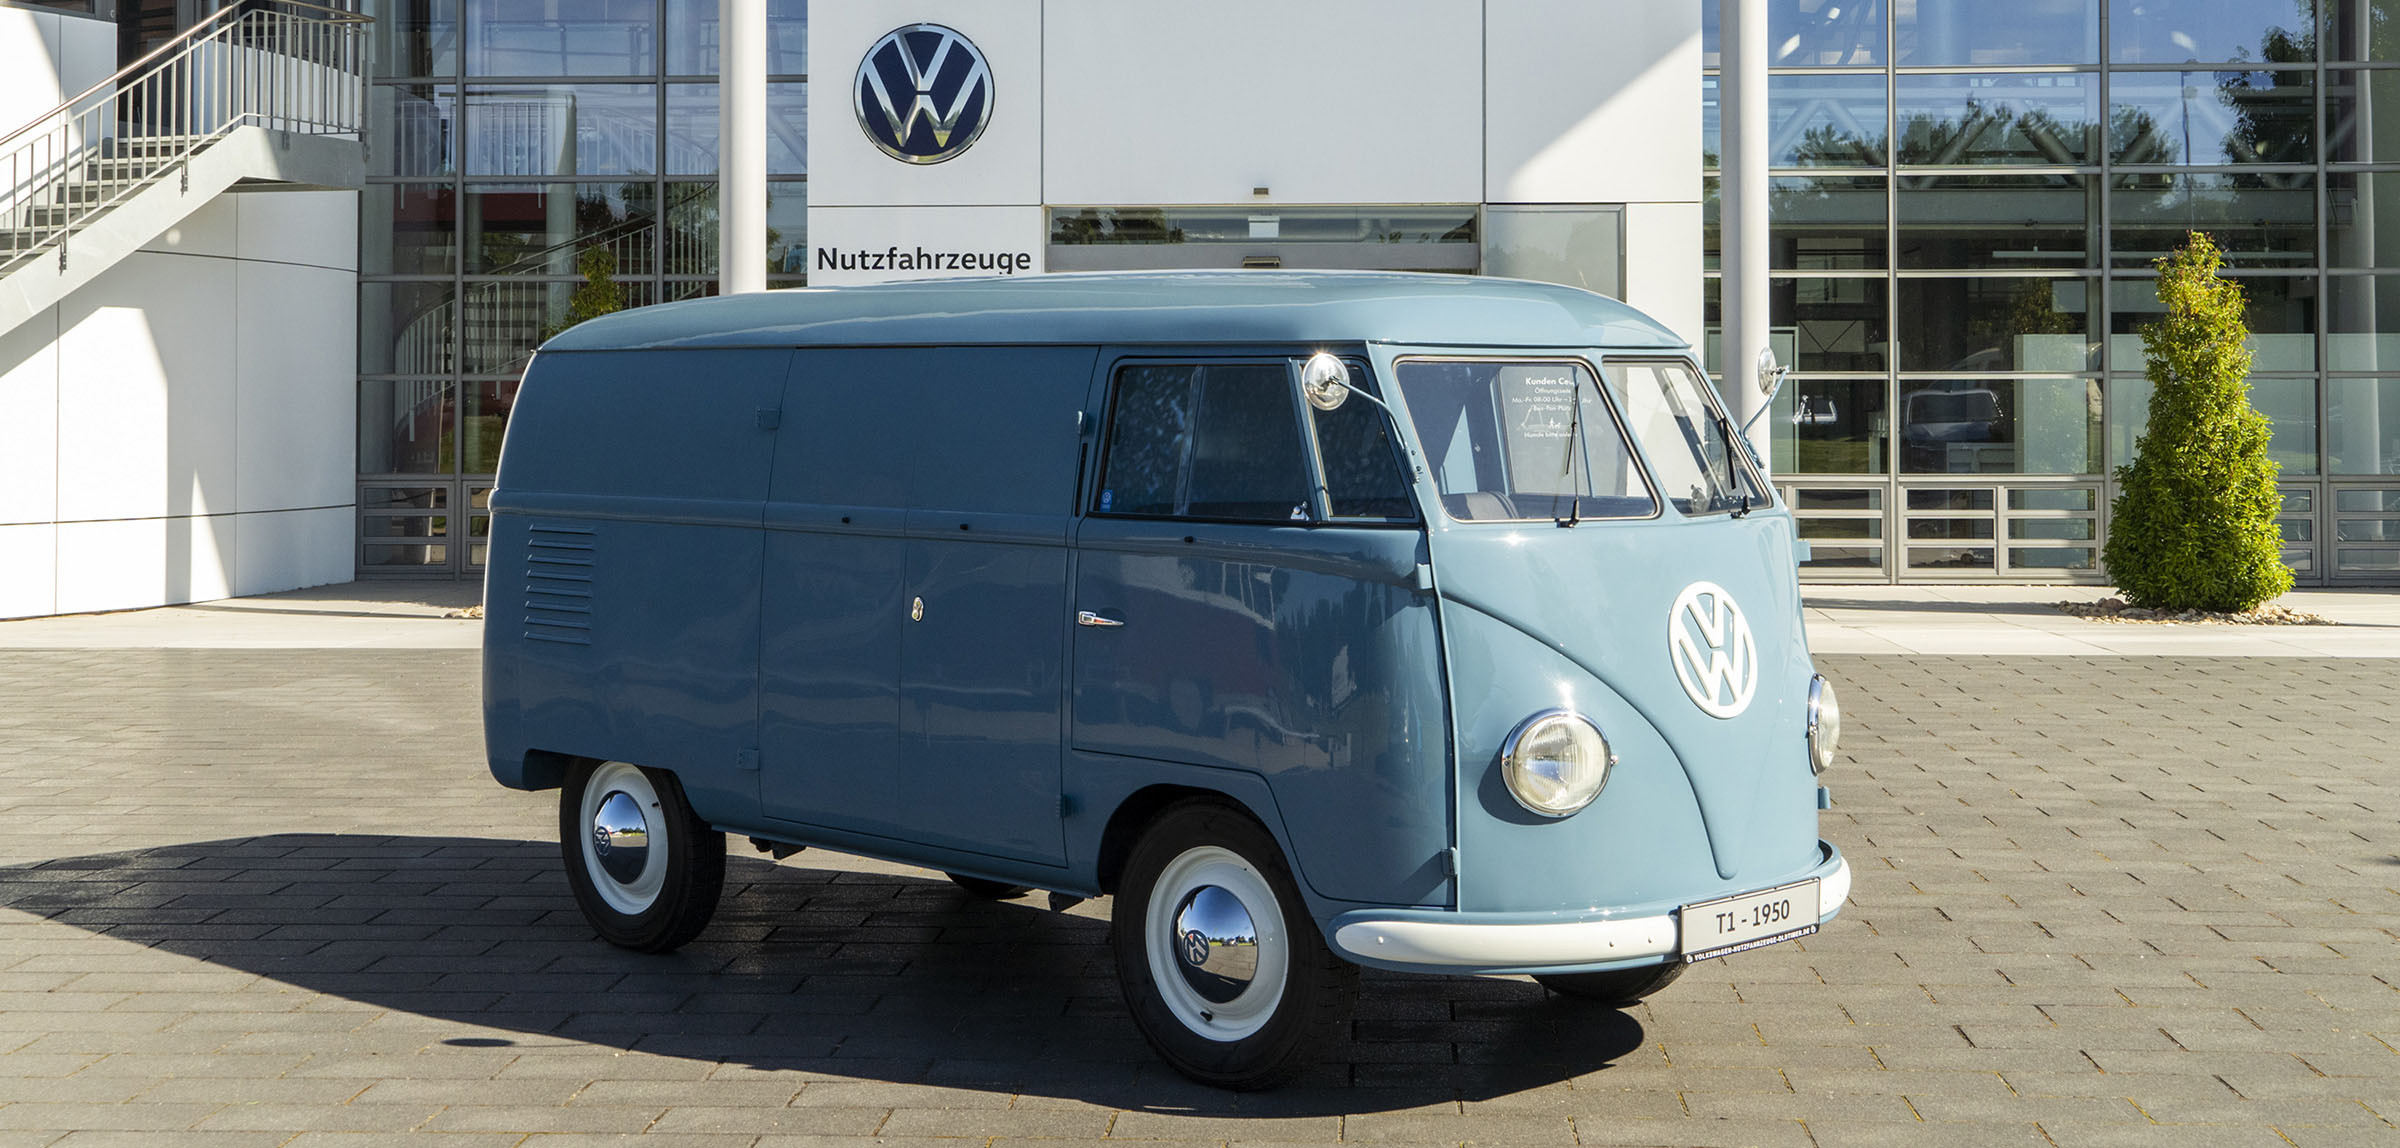 “Νεοκλασική” γοητεία για το παλιότερο Volkswagen Transporter